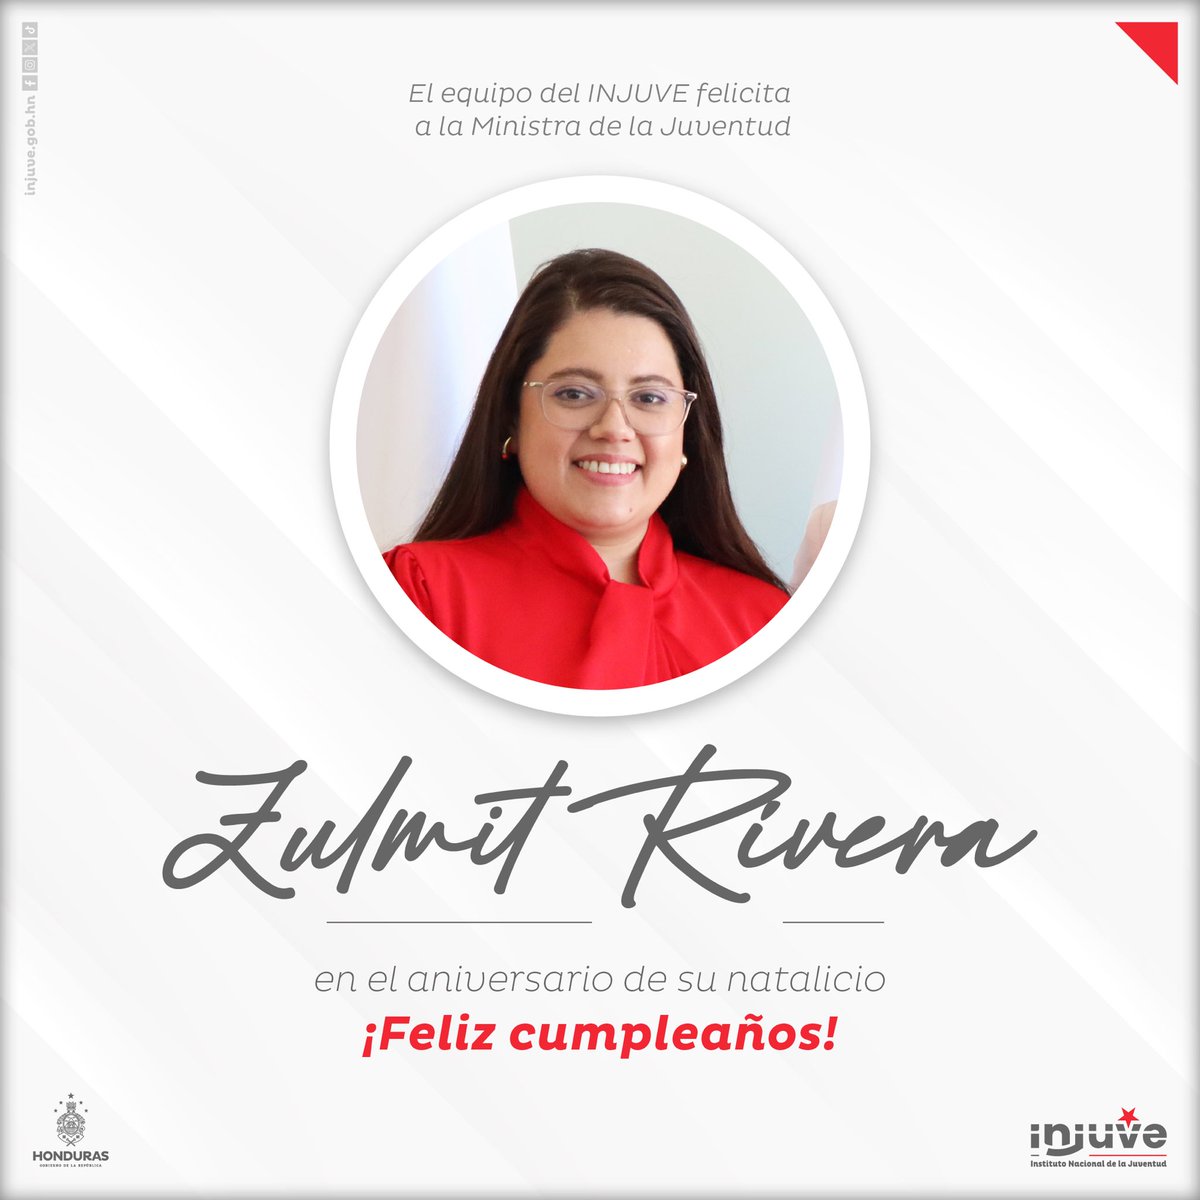 ¡Hoy es un día especial! 🎉 Queremos enviar nuestros mejores deseos a nuestra Ministra de la Juventud, Zulmit Rivera, en su cumpleaños. Su dedicación y compromiso por el empoderamiento de las juventudes hondureñas nos inspira a todas y todos. ¡Feliz cumpleaños! 🥳